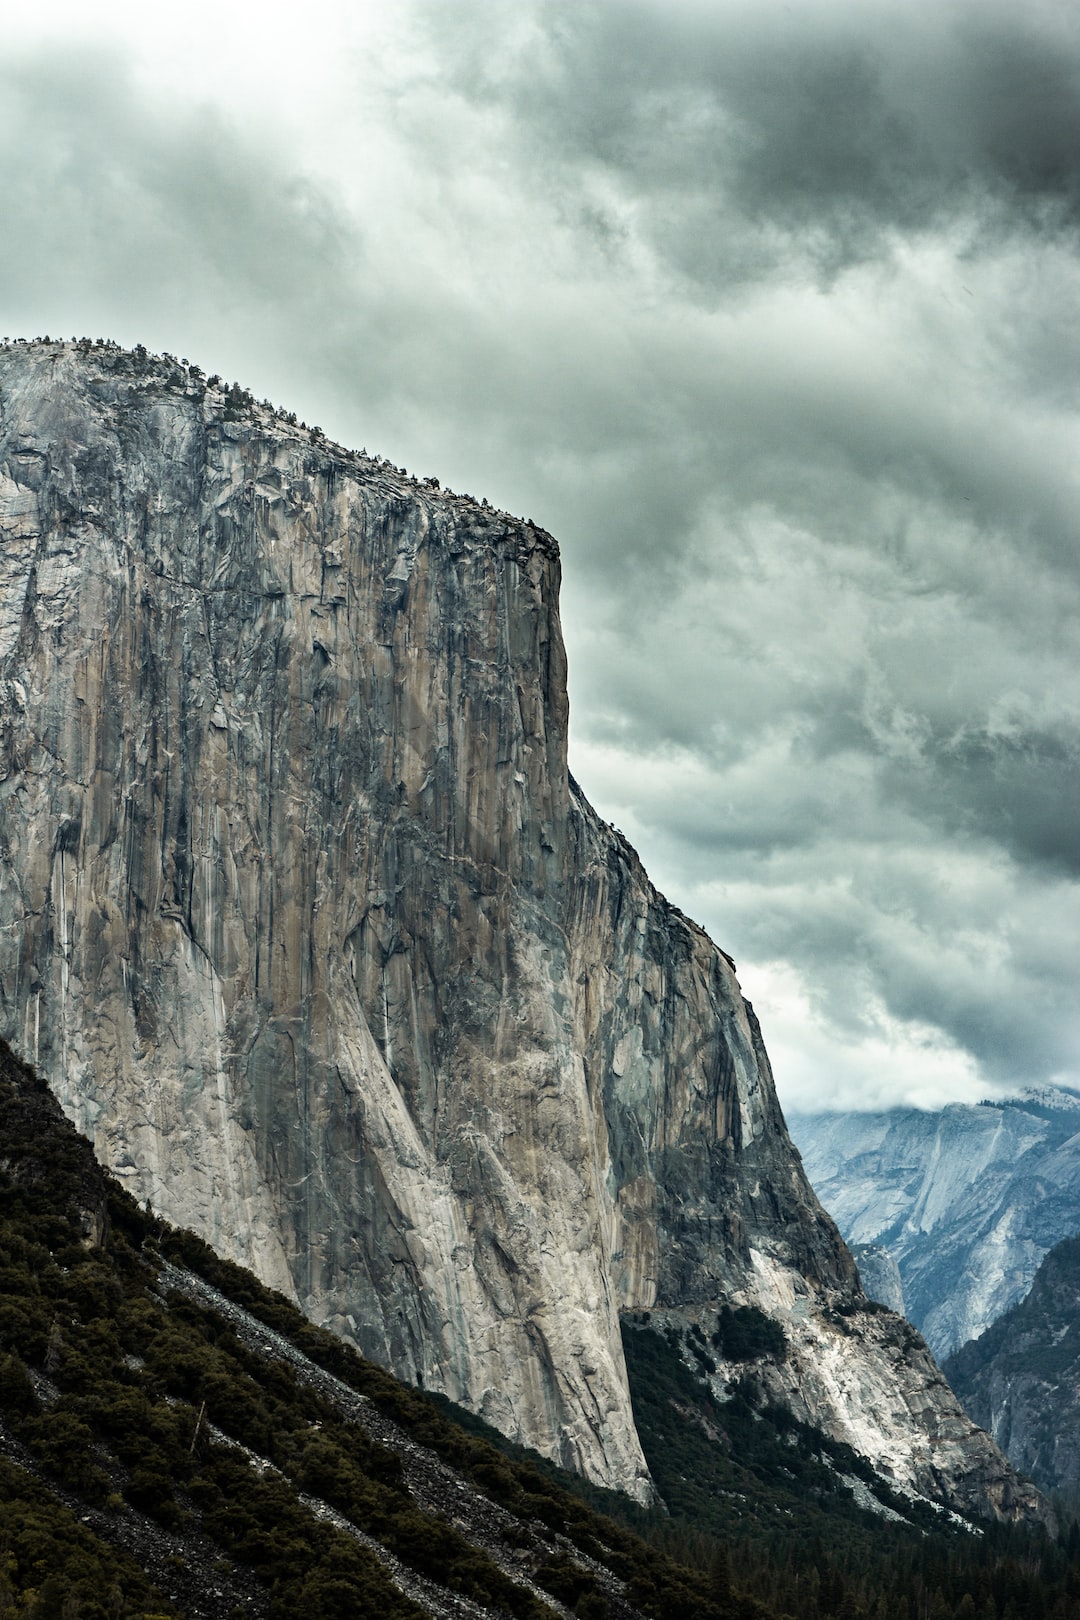 El Cap in Yosemite - October 2022